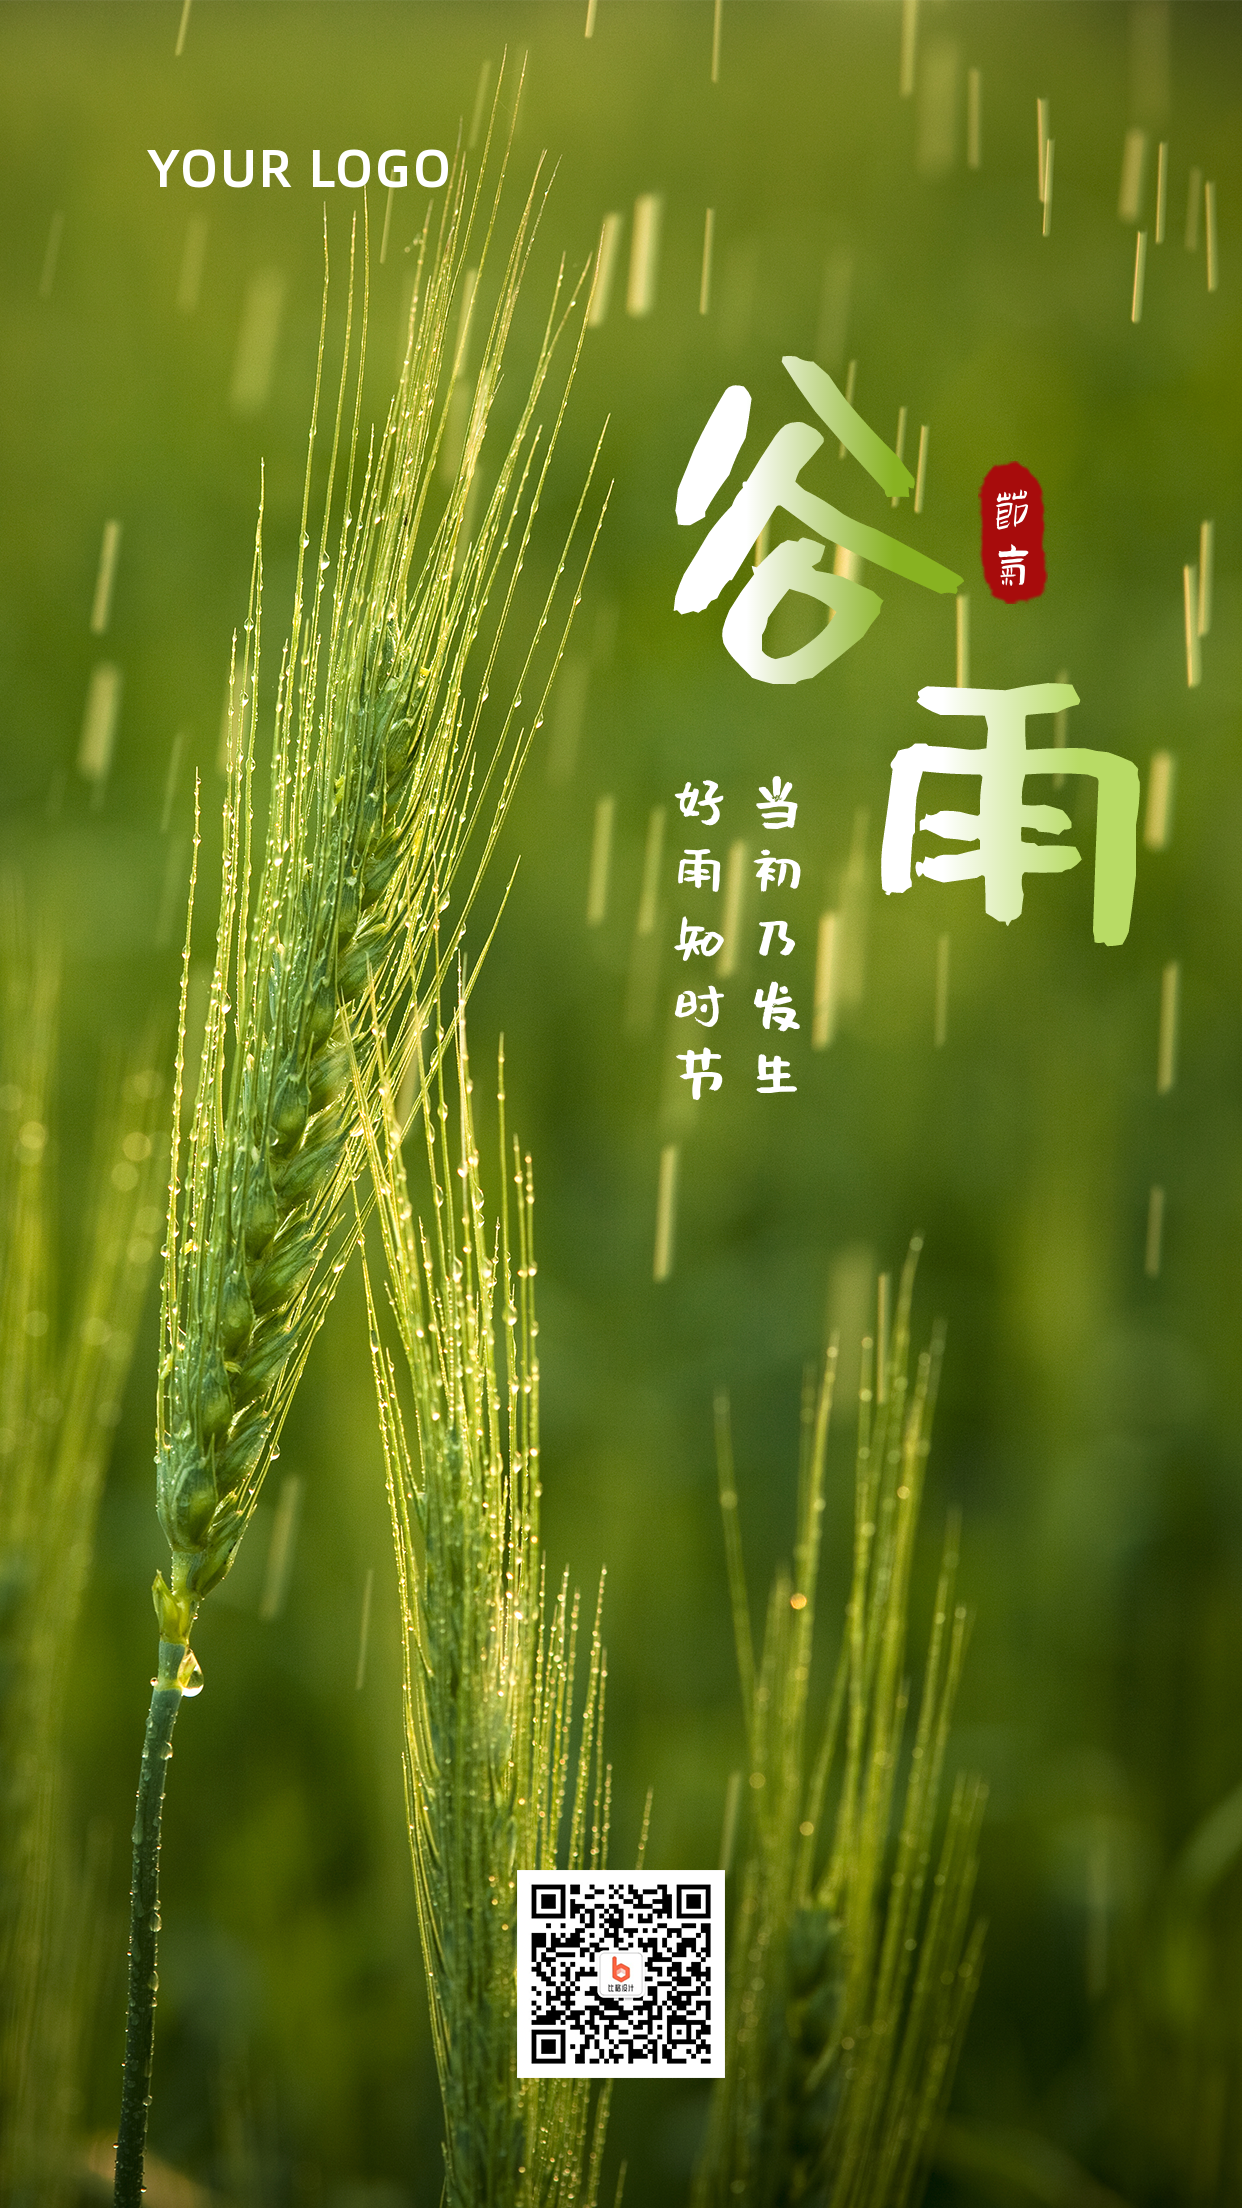 谷雨节气实景麦穗问候祝福手机海报